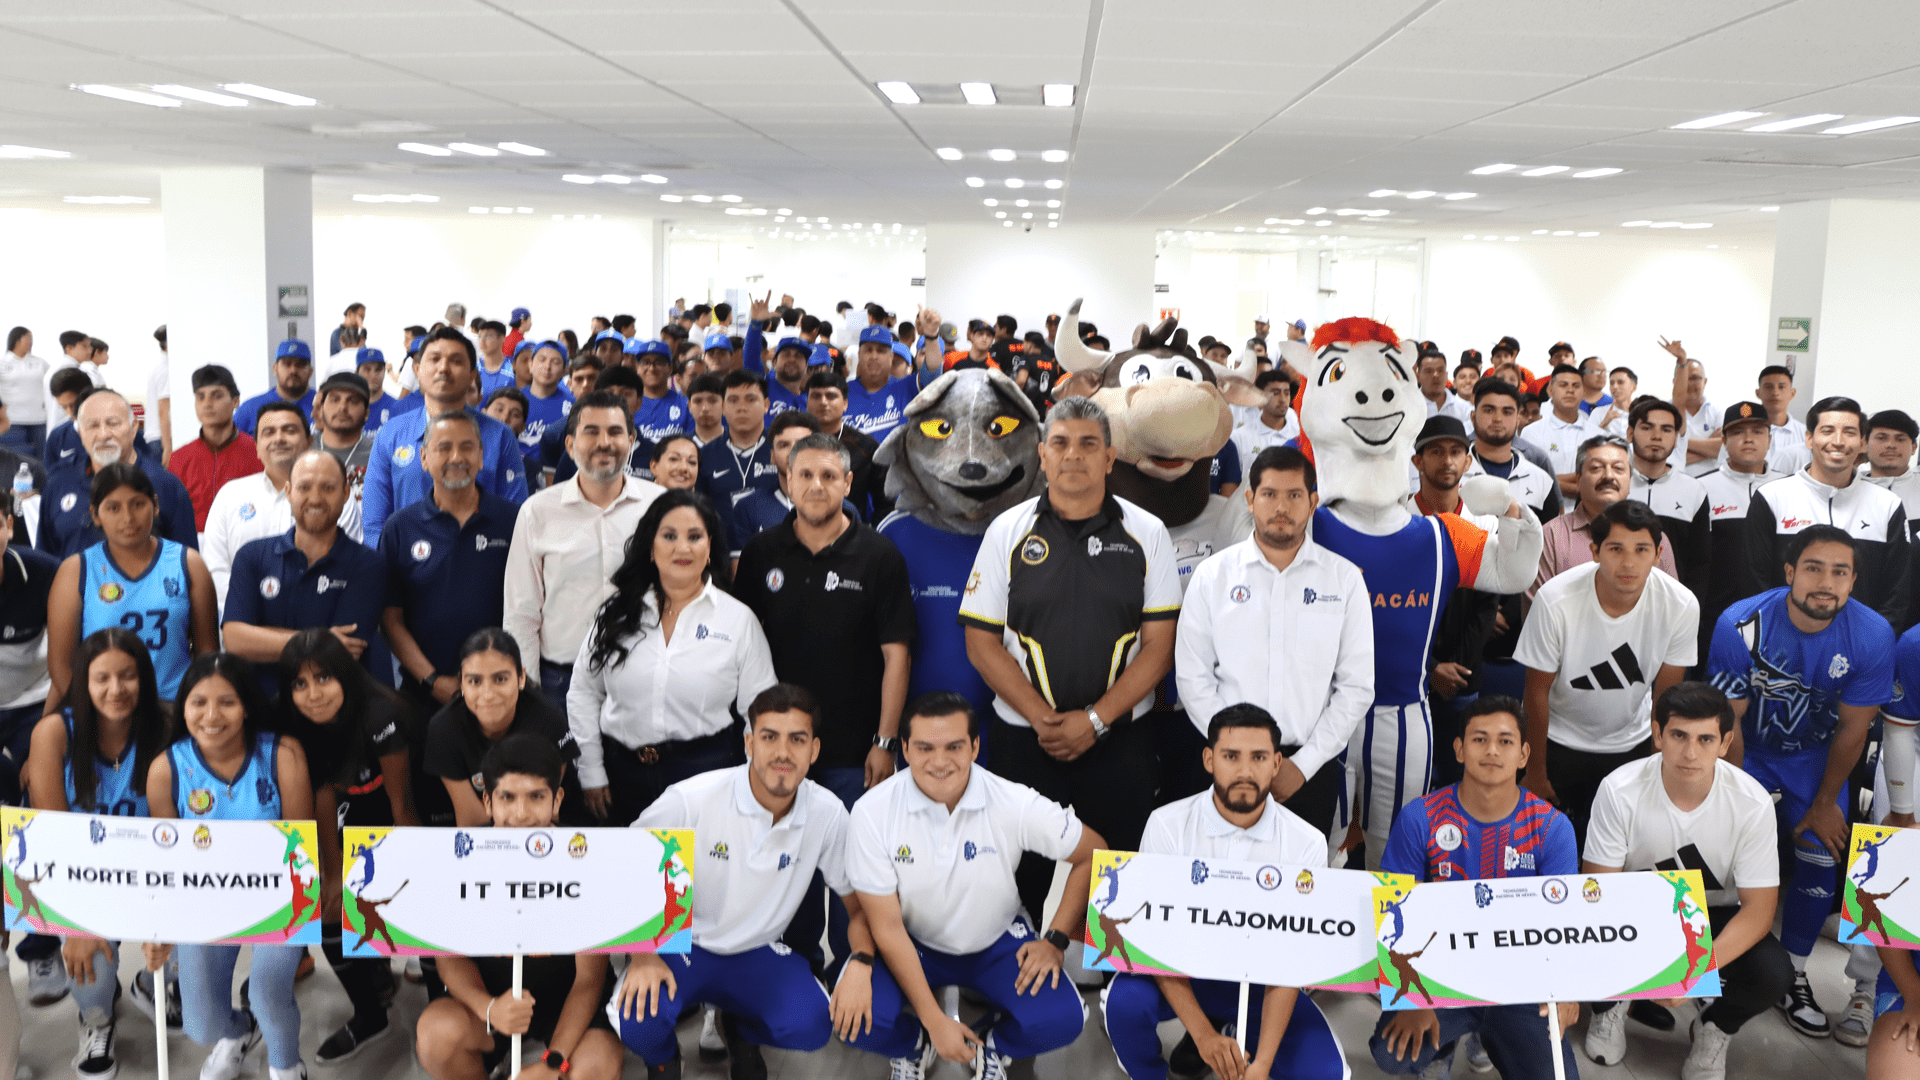 Se inaugura el LXVI Evento Prenacional Deportivo del Tecnológico Nacional de México en el ITC